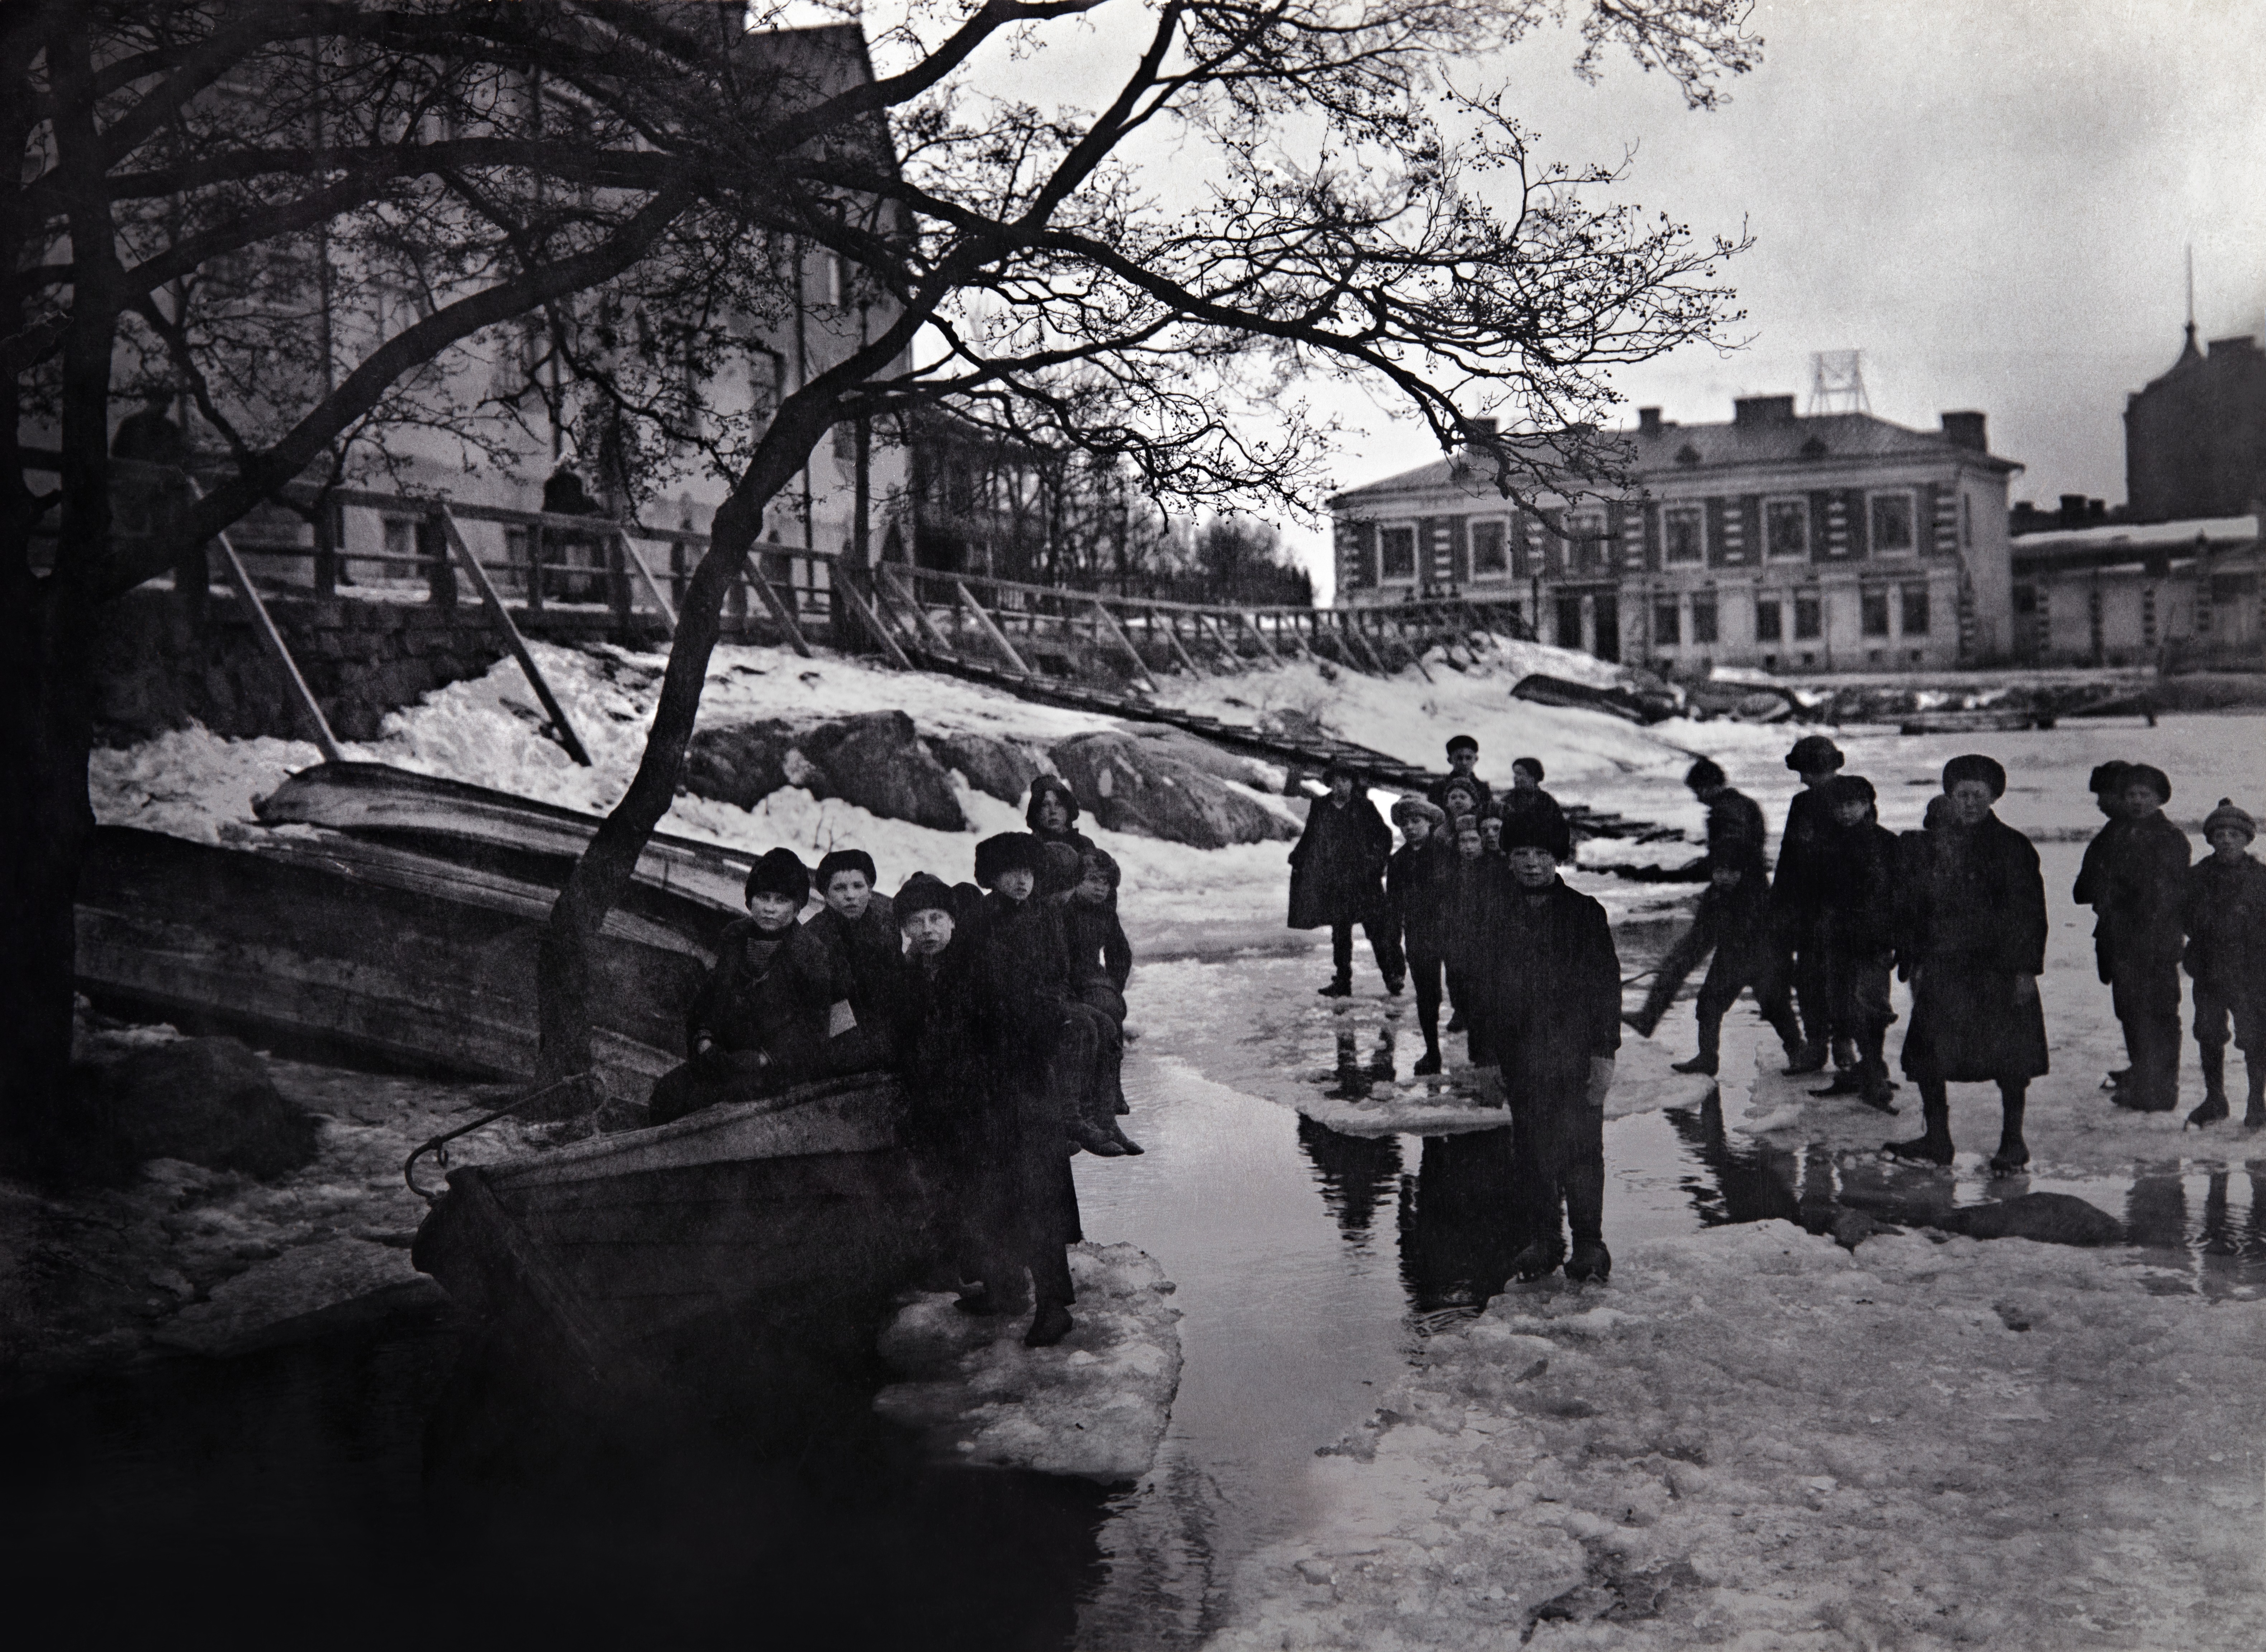 Lapsia Eläintarhanlahden jäällä, Eläintarhantie 3 :n kohdalla. Taustalla Säästöpankinranta 2 ja Pitkänsillanranta 13 sekä Saariniemenkatu 2. Sama kuva kuin G35636.